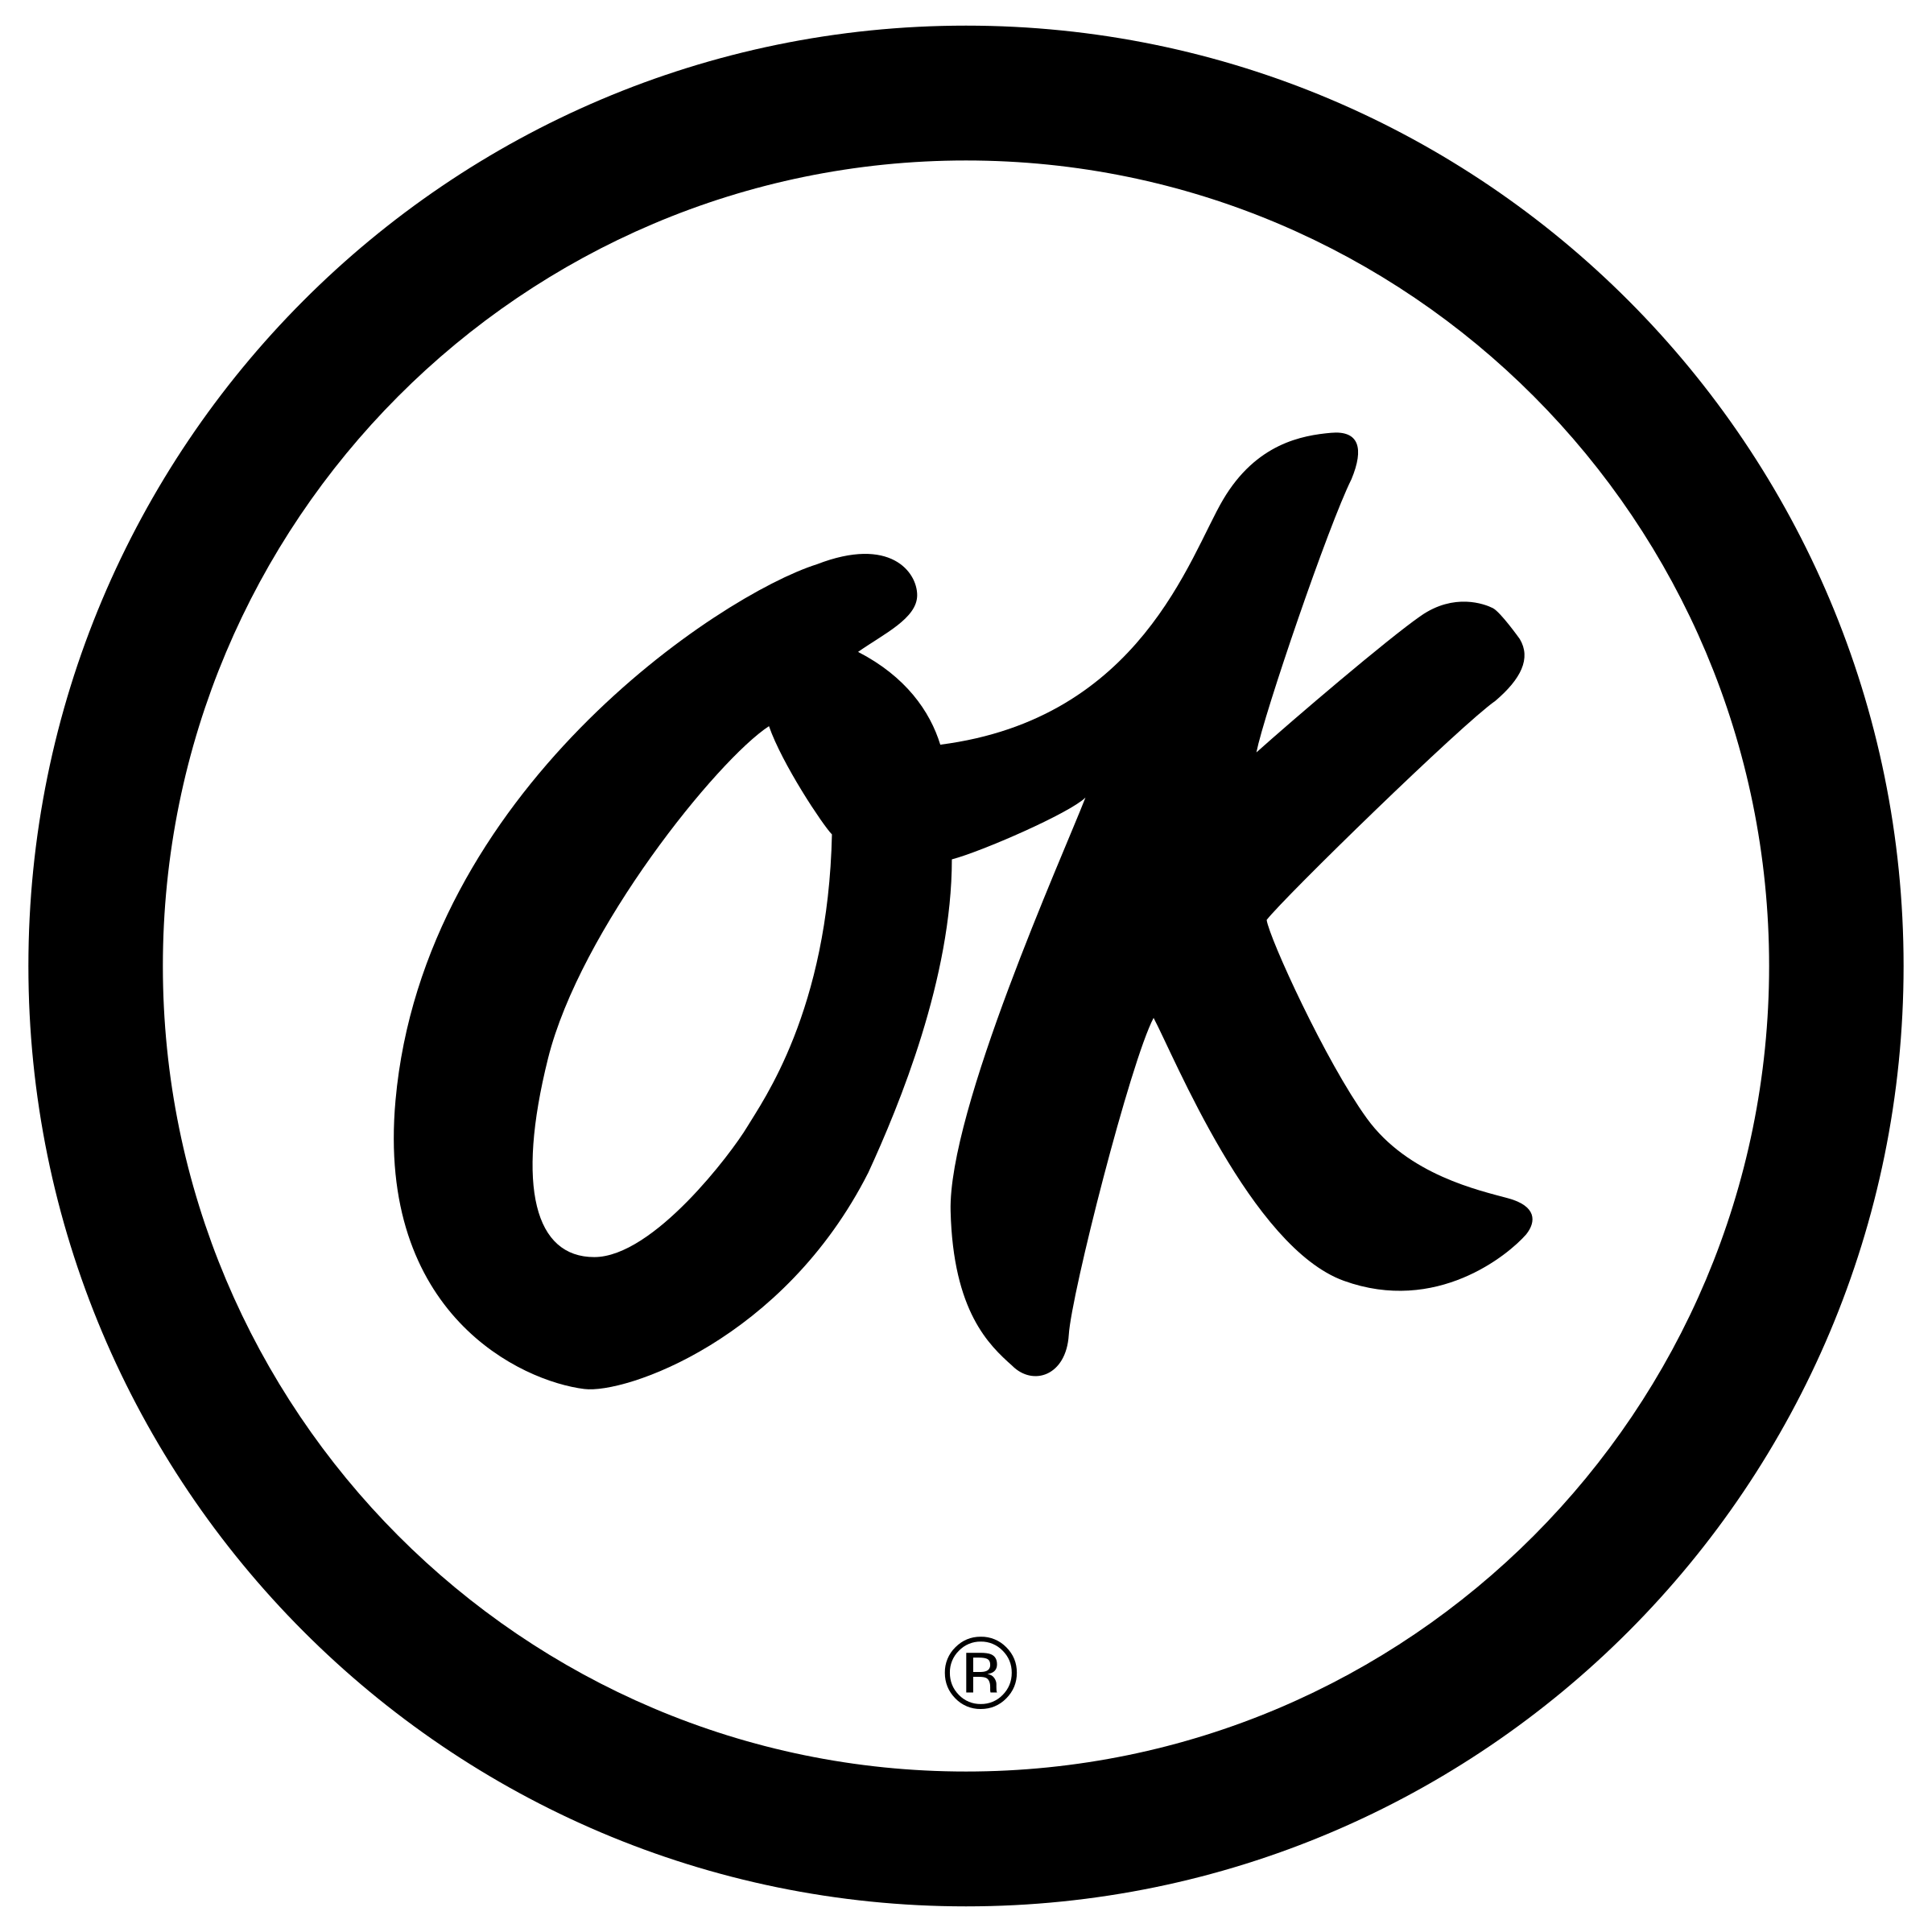 OK Logo - OK Logo PNG Transparent & SVG Vector - Freebie Supply